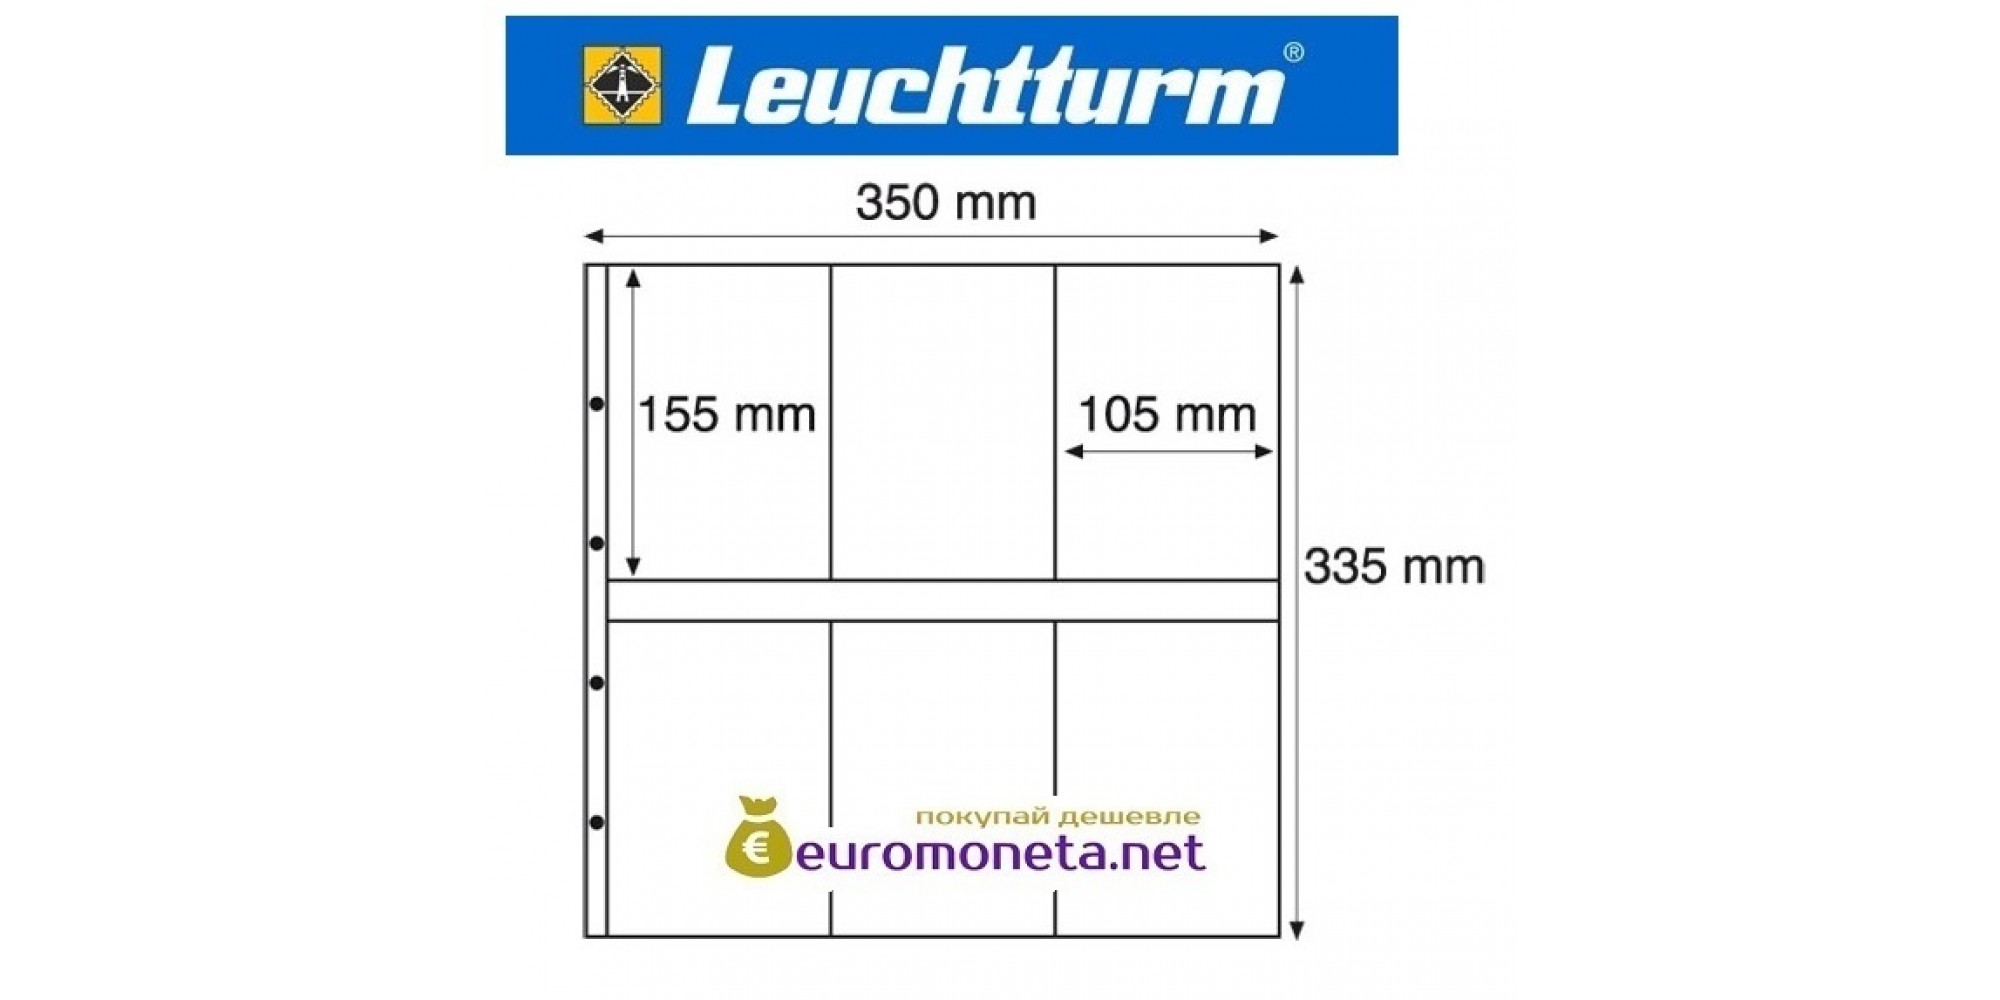 Leuchtturm MAXIMUM MAX 3S лист чёрный для банкнот, открыток и другого